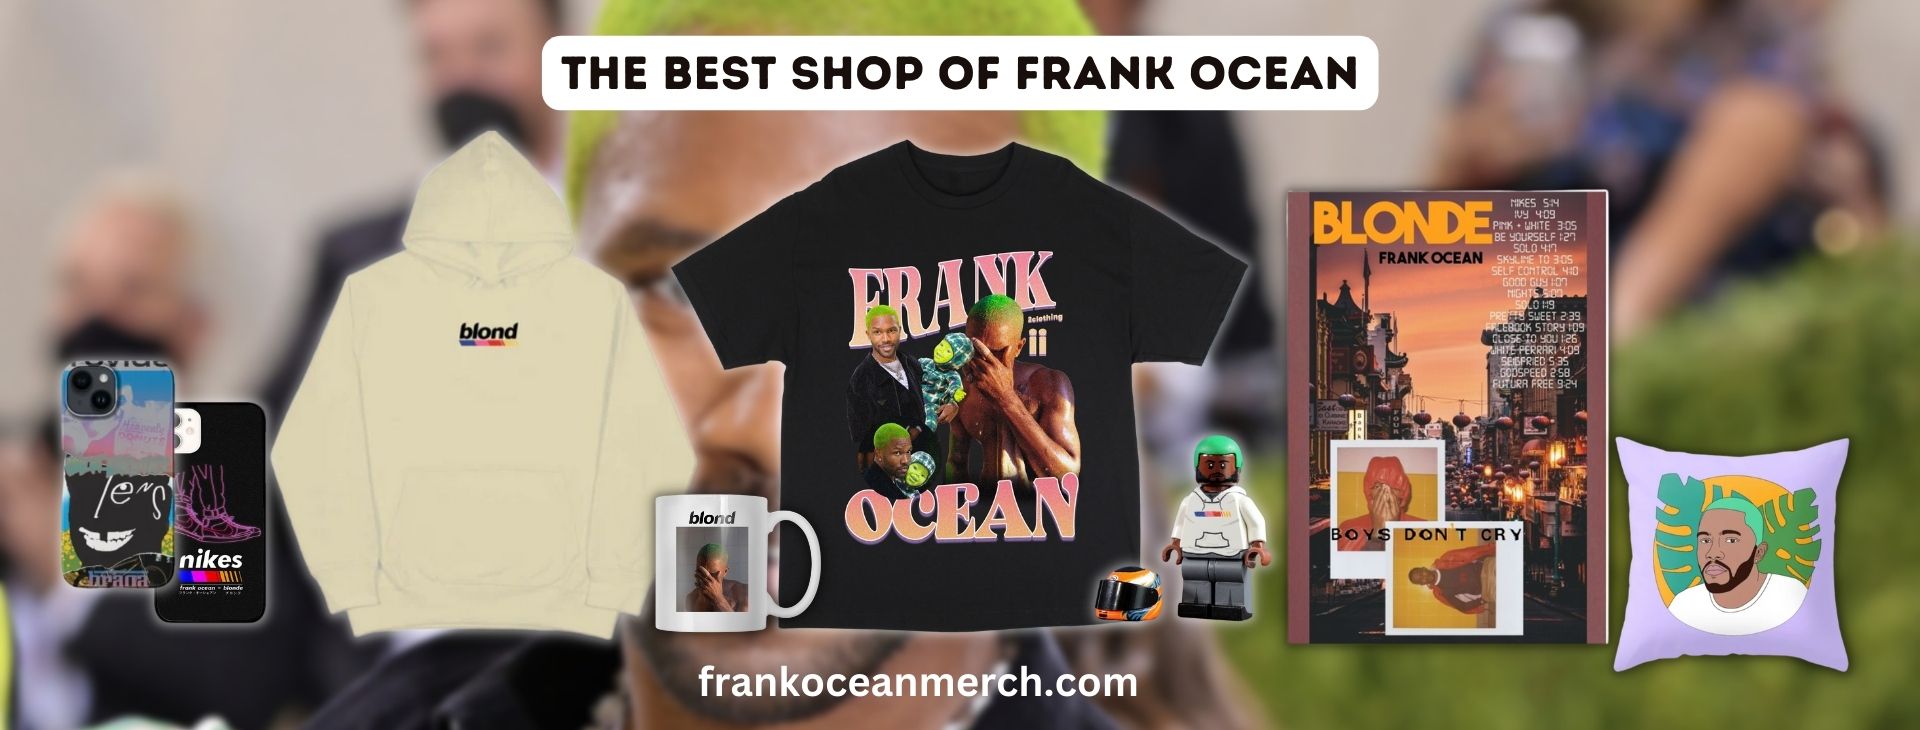 frank ocean BANNER - Frank Ocean Merch